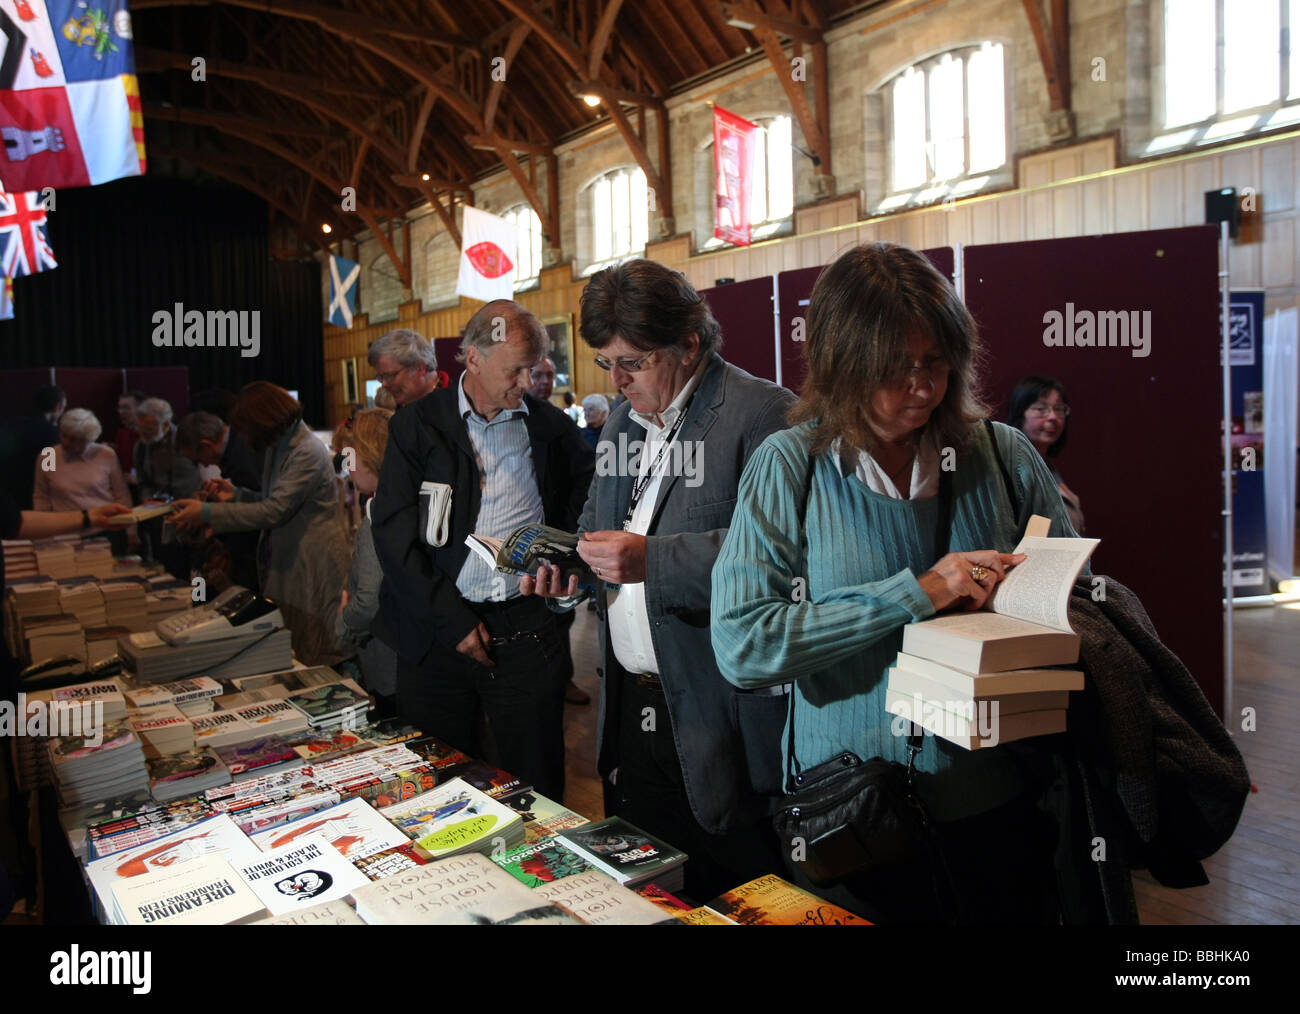 Les gens de la file d'acheter des livres à la parole Festival tenu à l'Université d'Aberdeen, Écosse, Royaume-Uni Banque D'Images